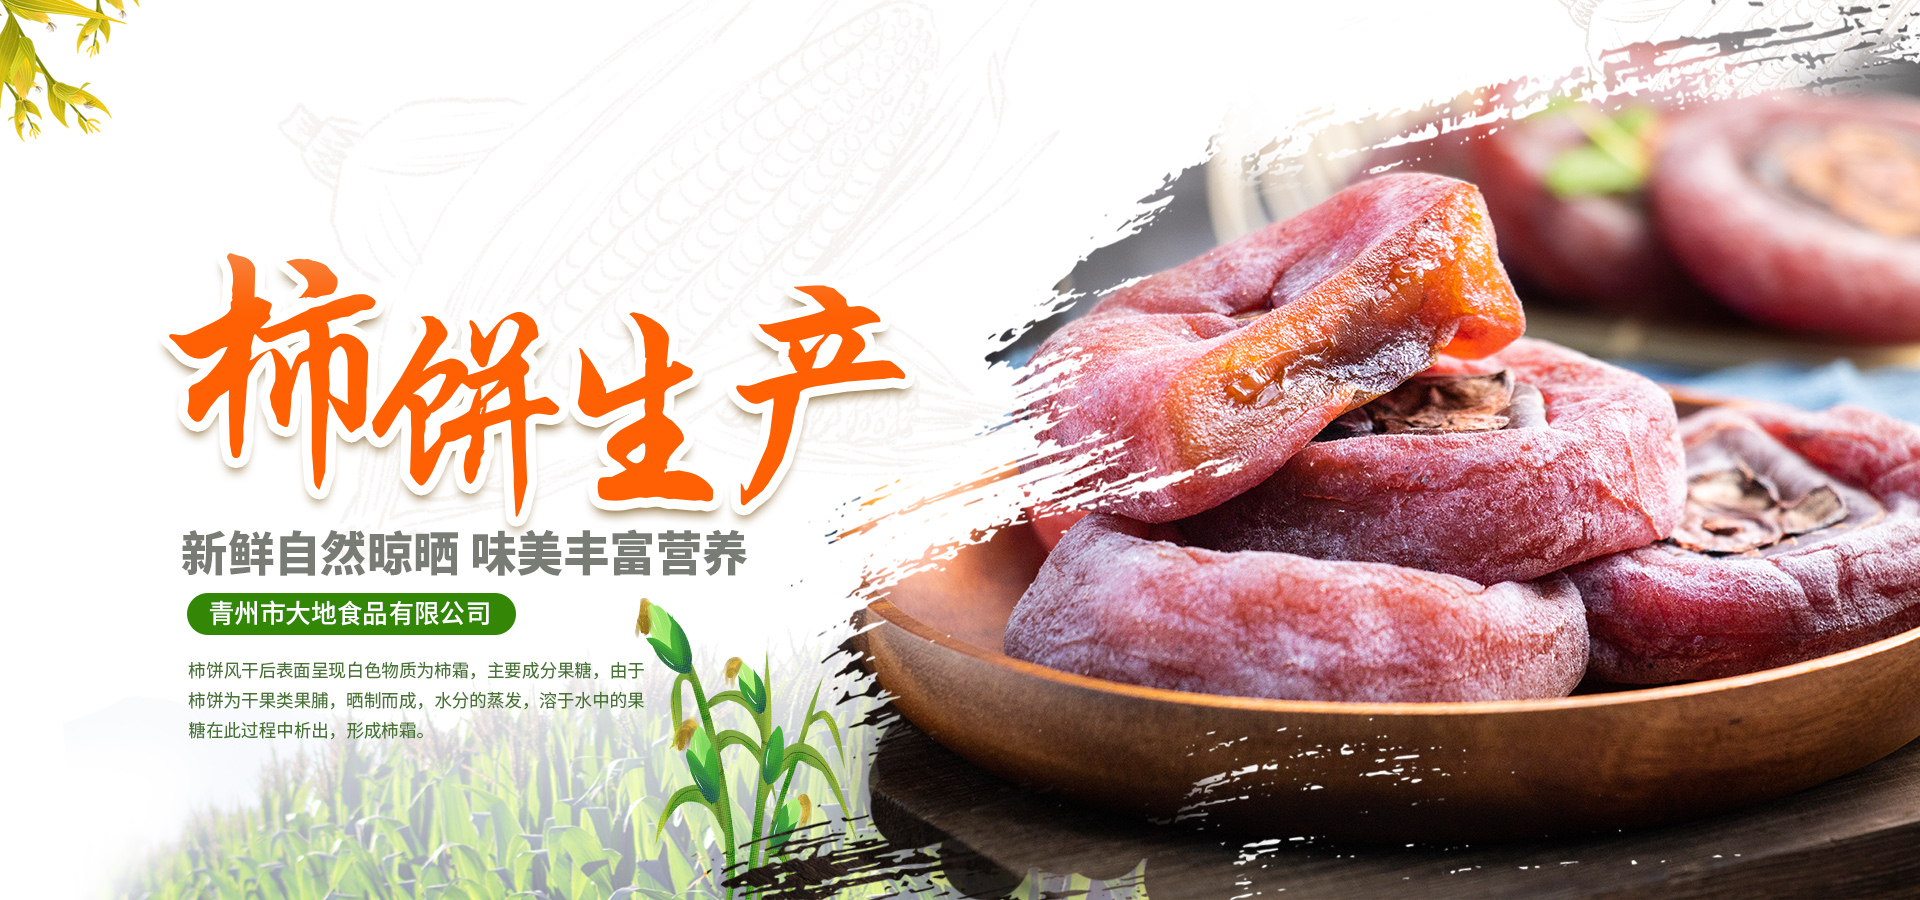 干瓢和柿饼以及山楂制品厂家-青州市大地食品有限公司